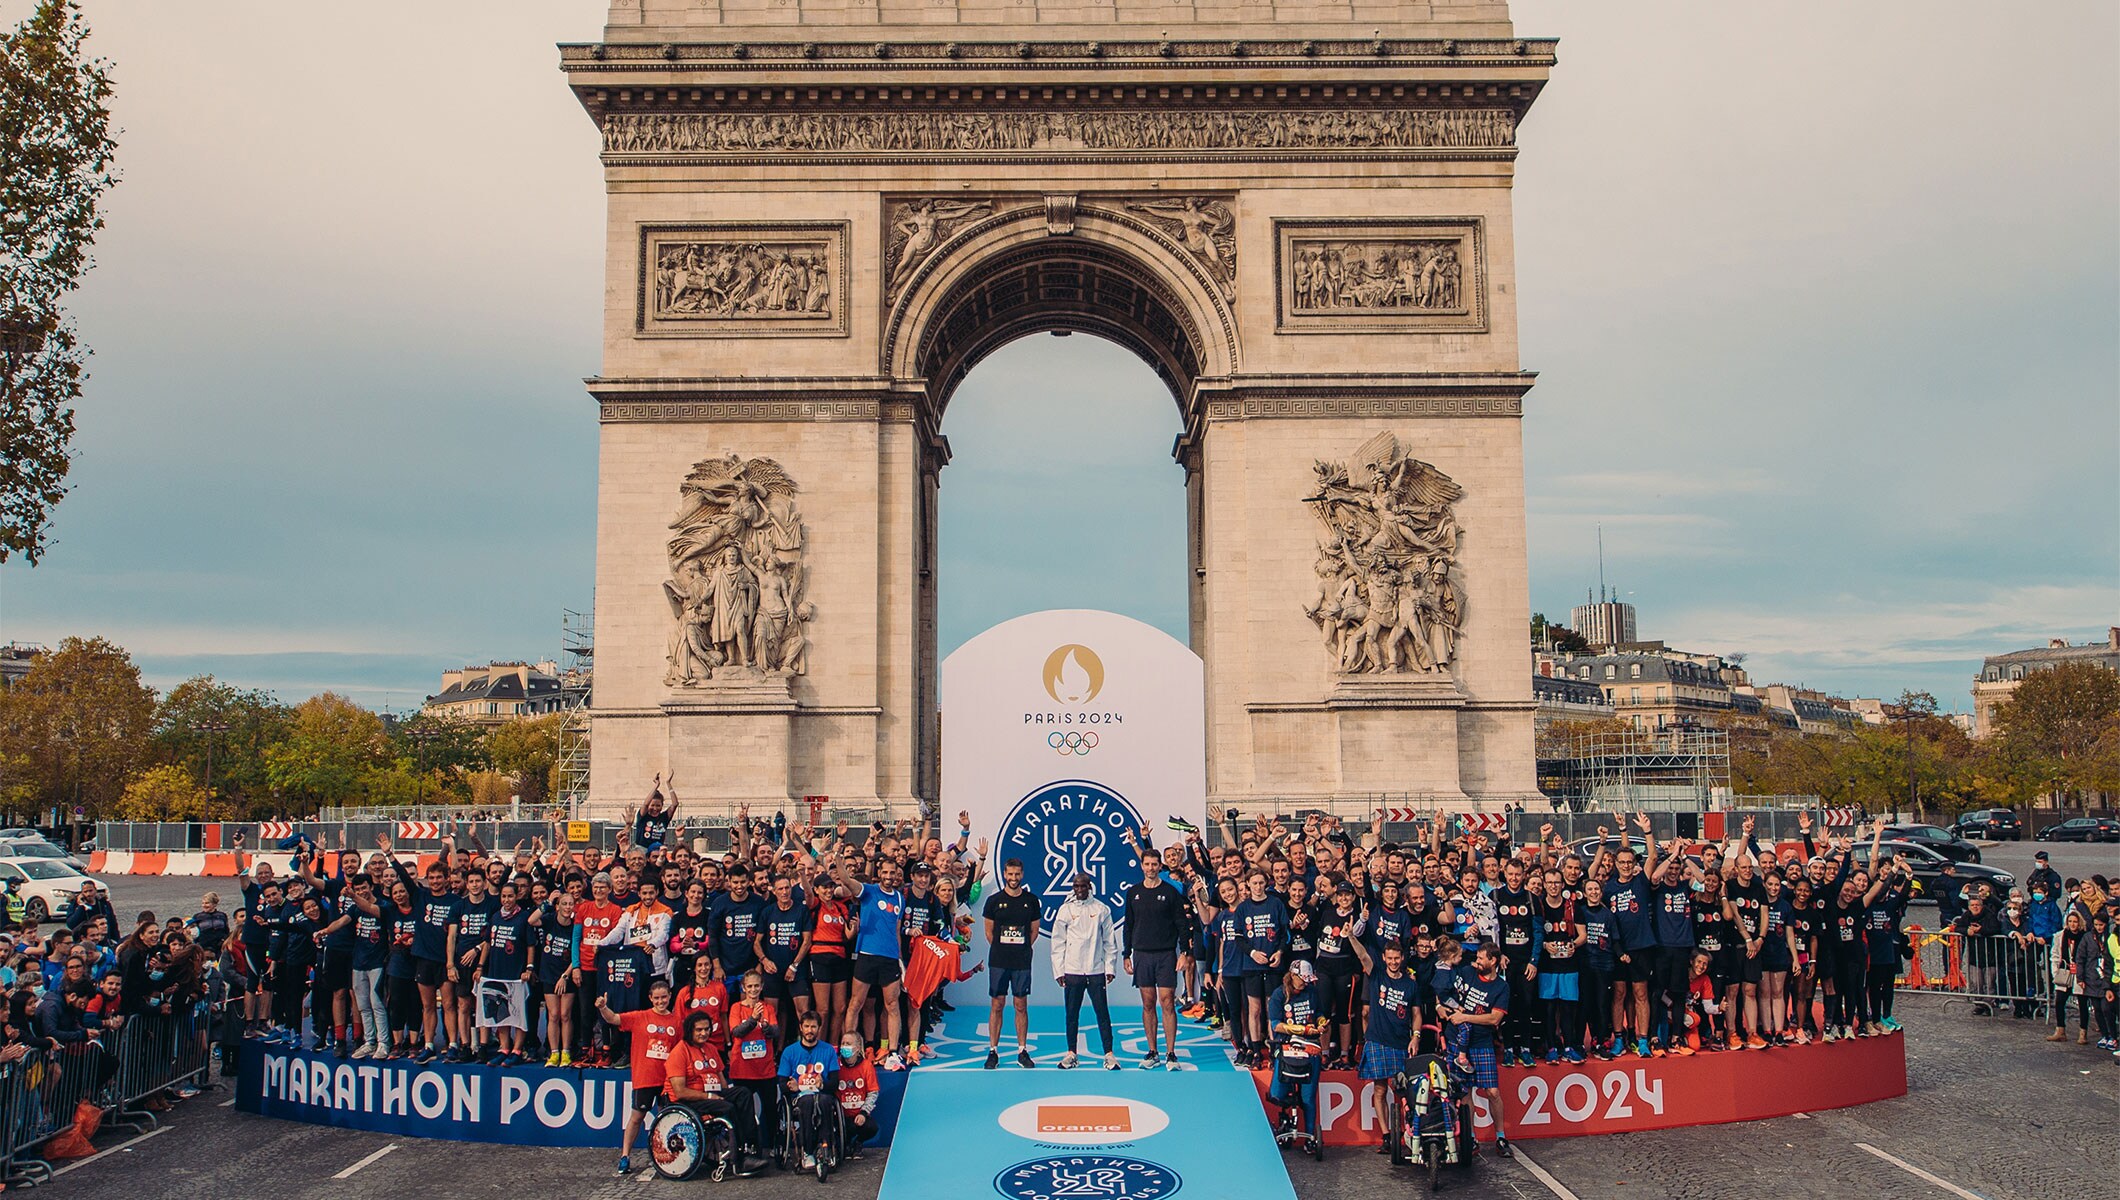 Paris 2024 hosts ‘Marathon Pour Tous’, Mass Event Running with Eliud Kipchoge